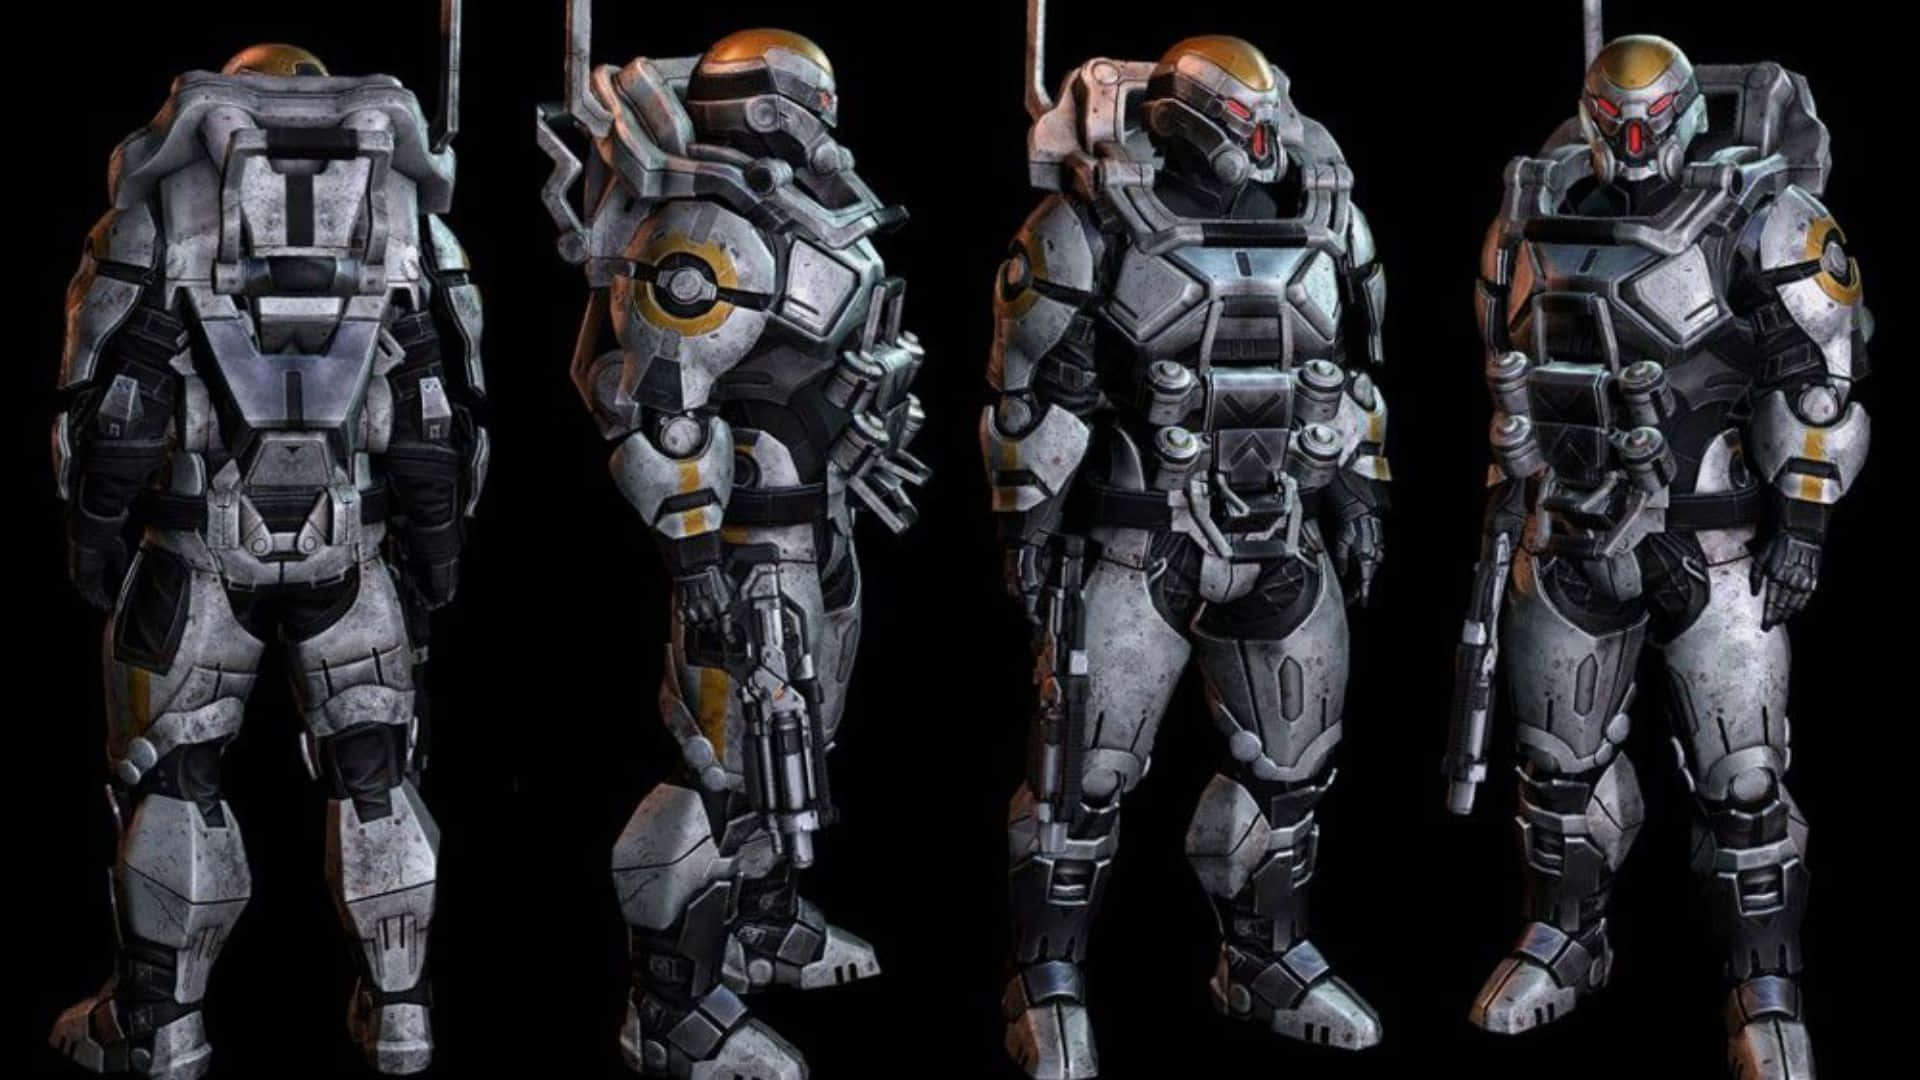 Elhombre Ilusorio, Comandante Shepard Y El Logotipo De Cerberus En El Universo De Mass Effect. Fondo de pantalla